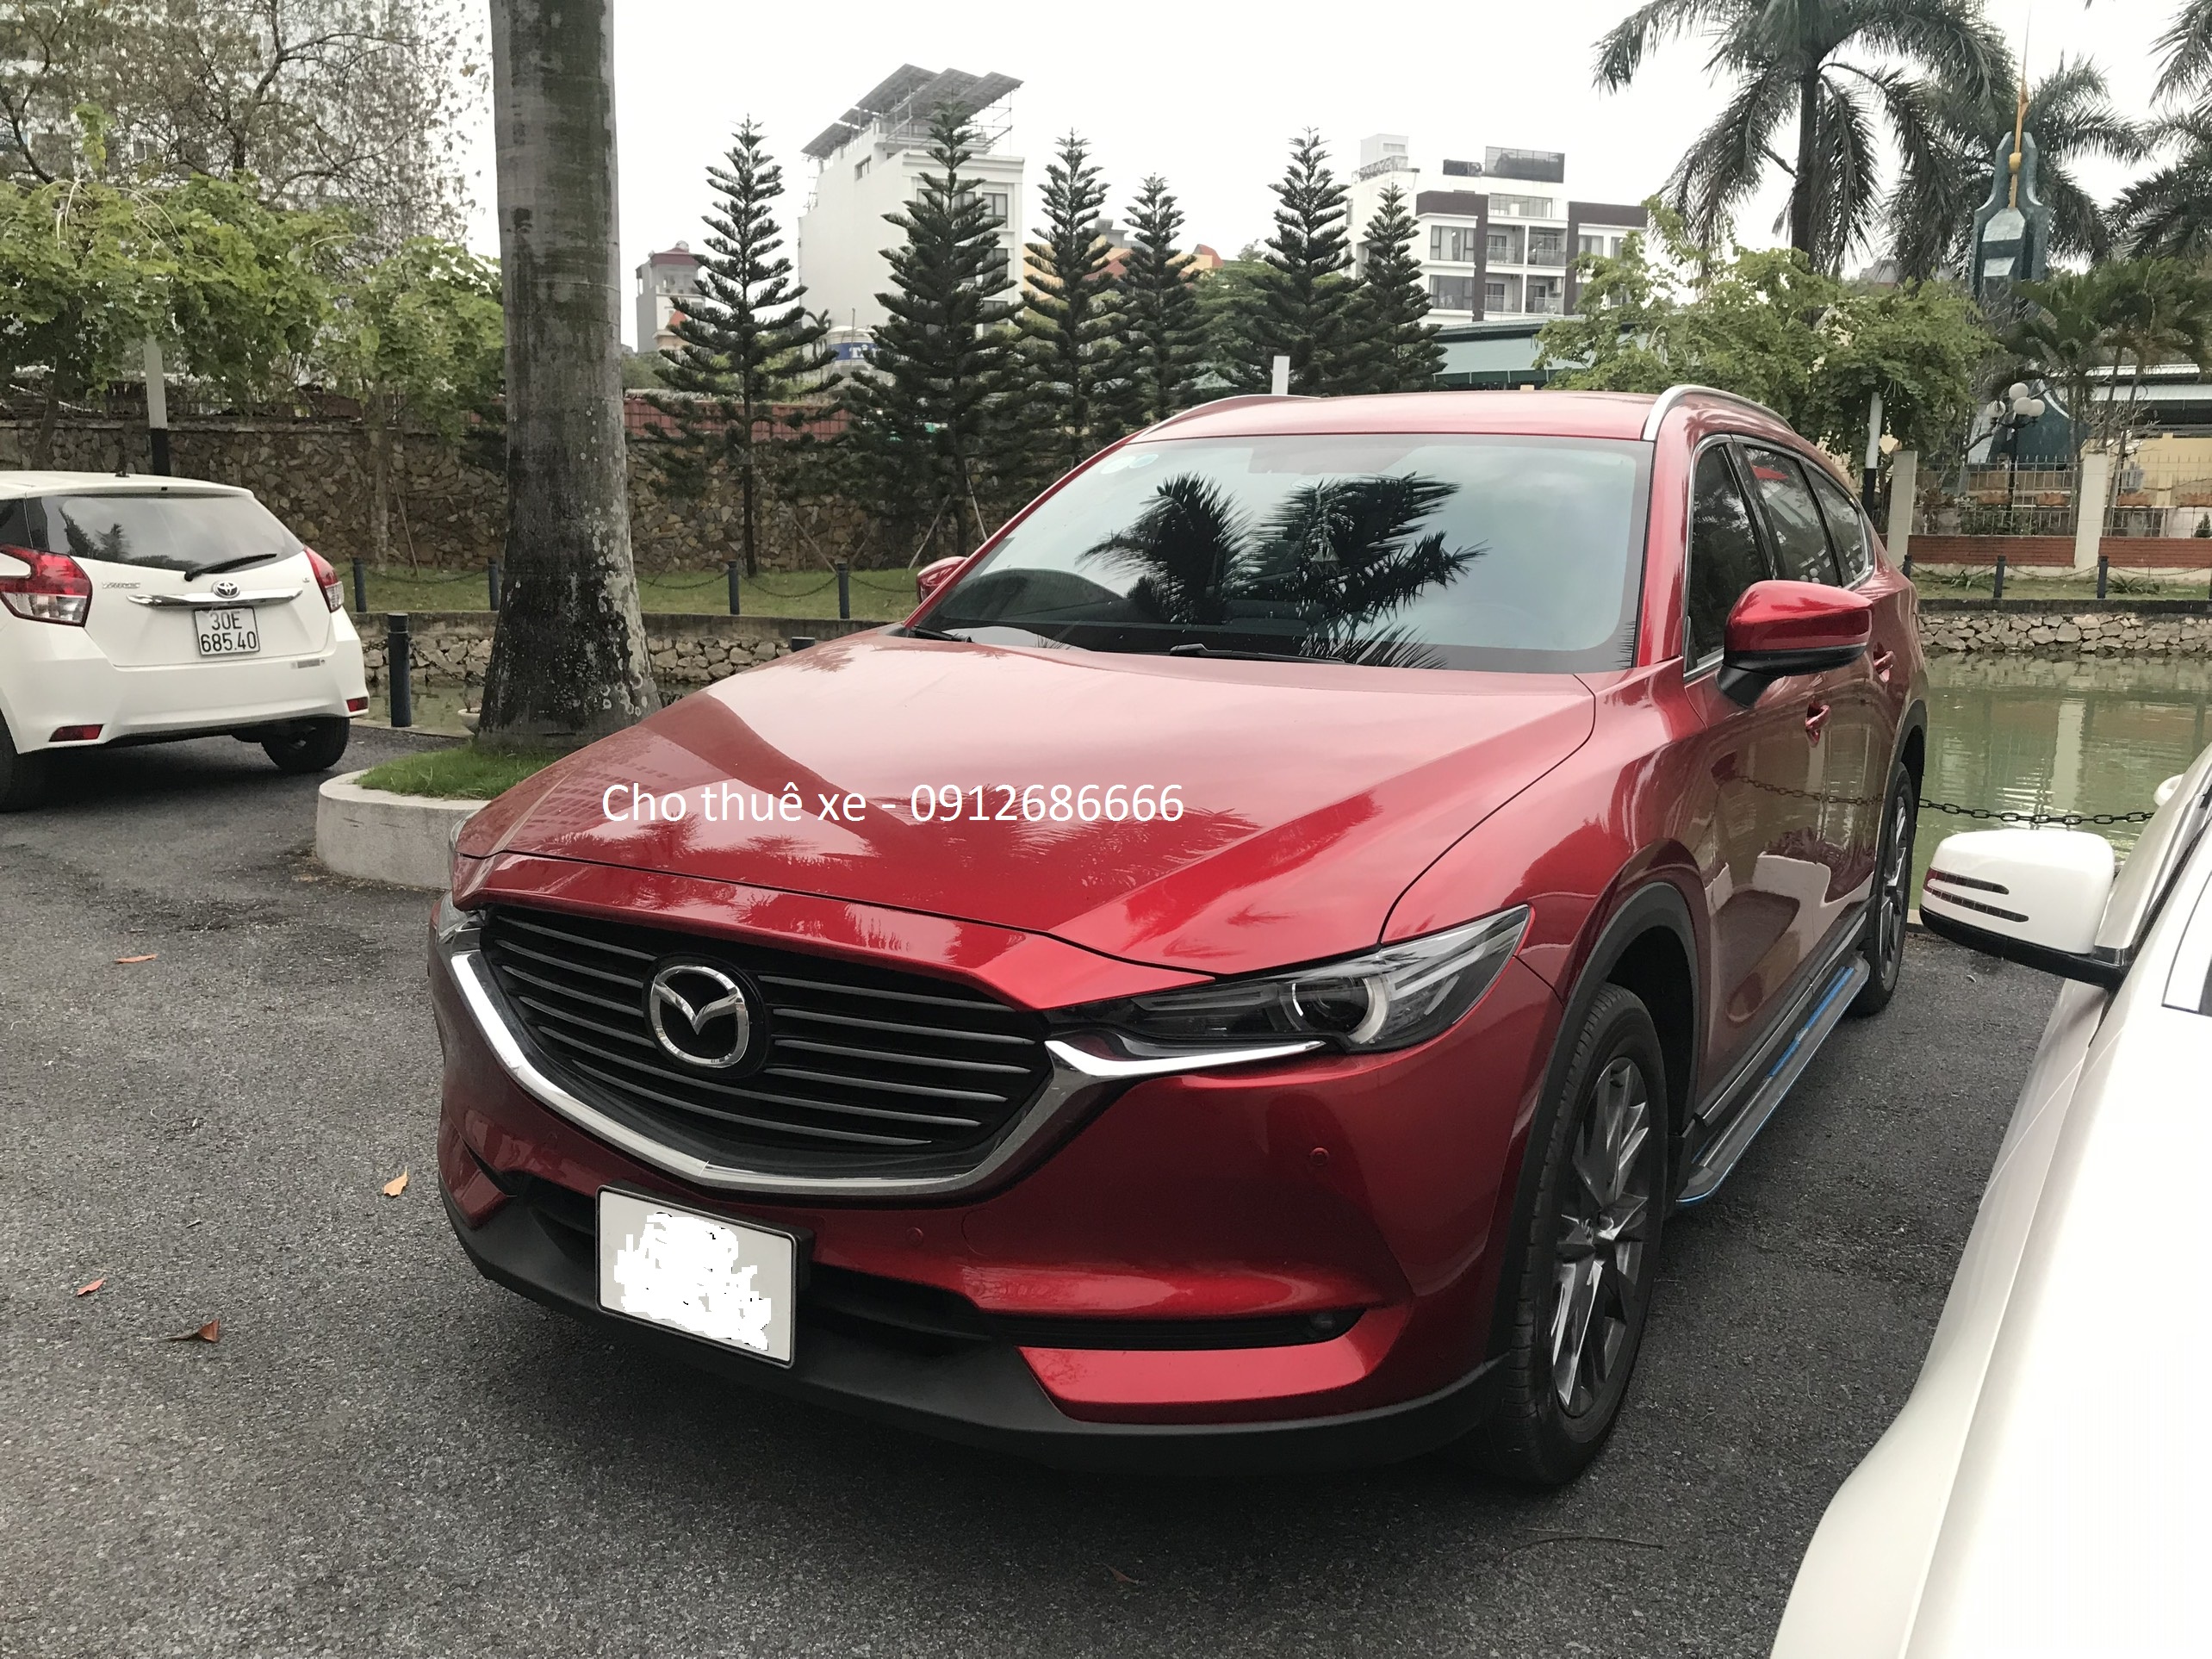 Cho thuê xe Mazda 3 đời 2016 theo tháng, bao xăng và tài xế - Xe - bán tại  Hiền - cho thuê xe 4 chỗ, cho thuê ôtô giá rẻ, cho